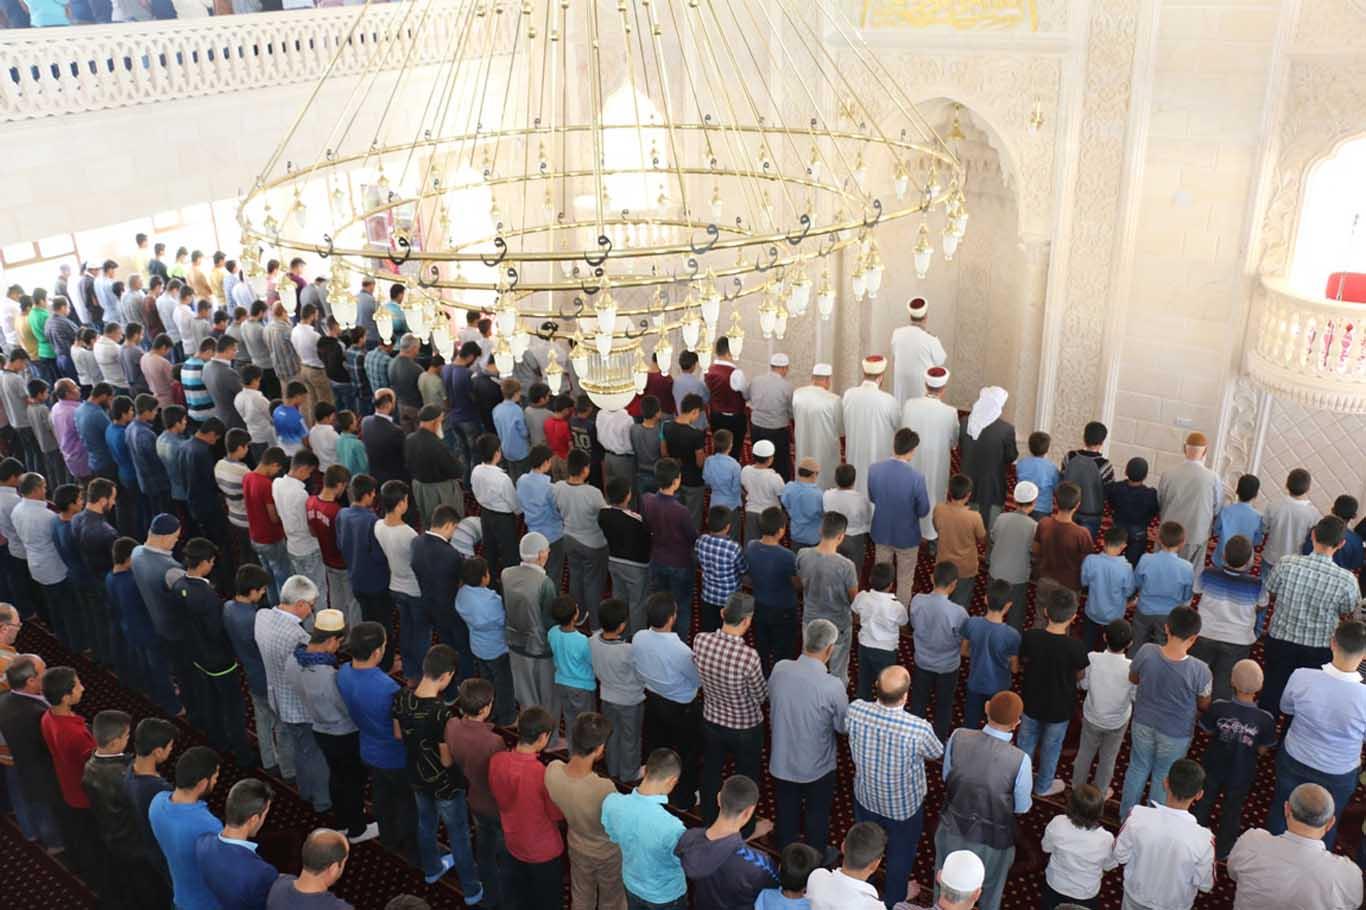 Şanlıurfa'da bin kişi kapasiteli caminin açılışı yapıldı